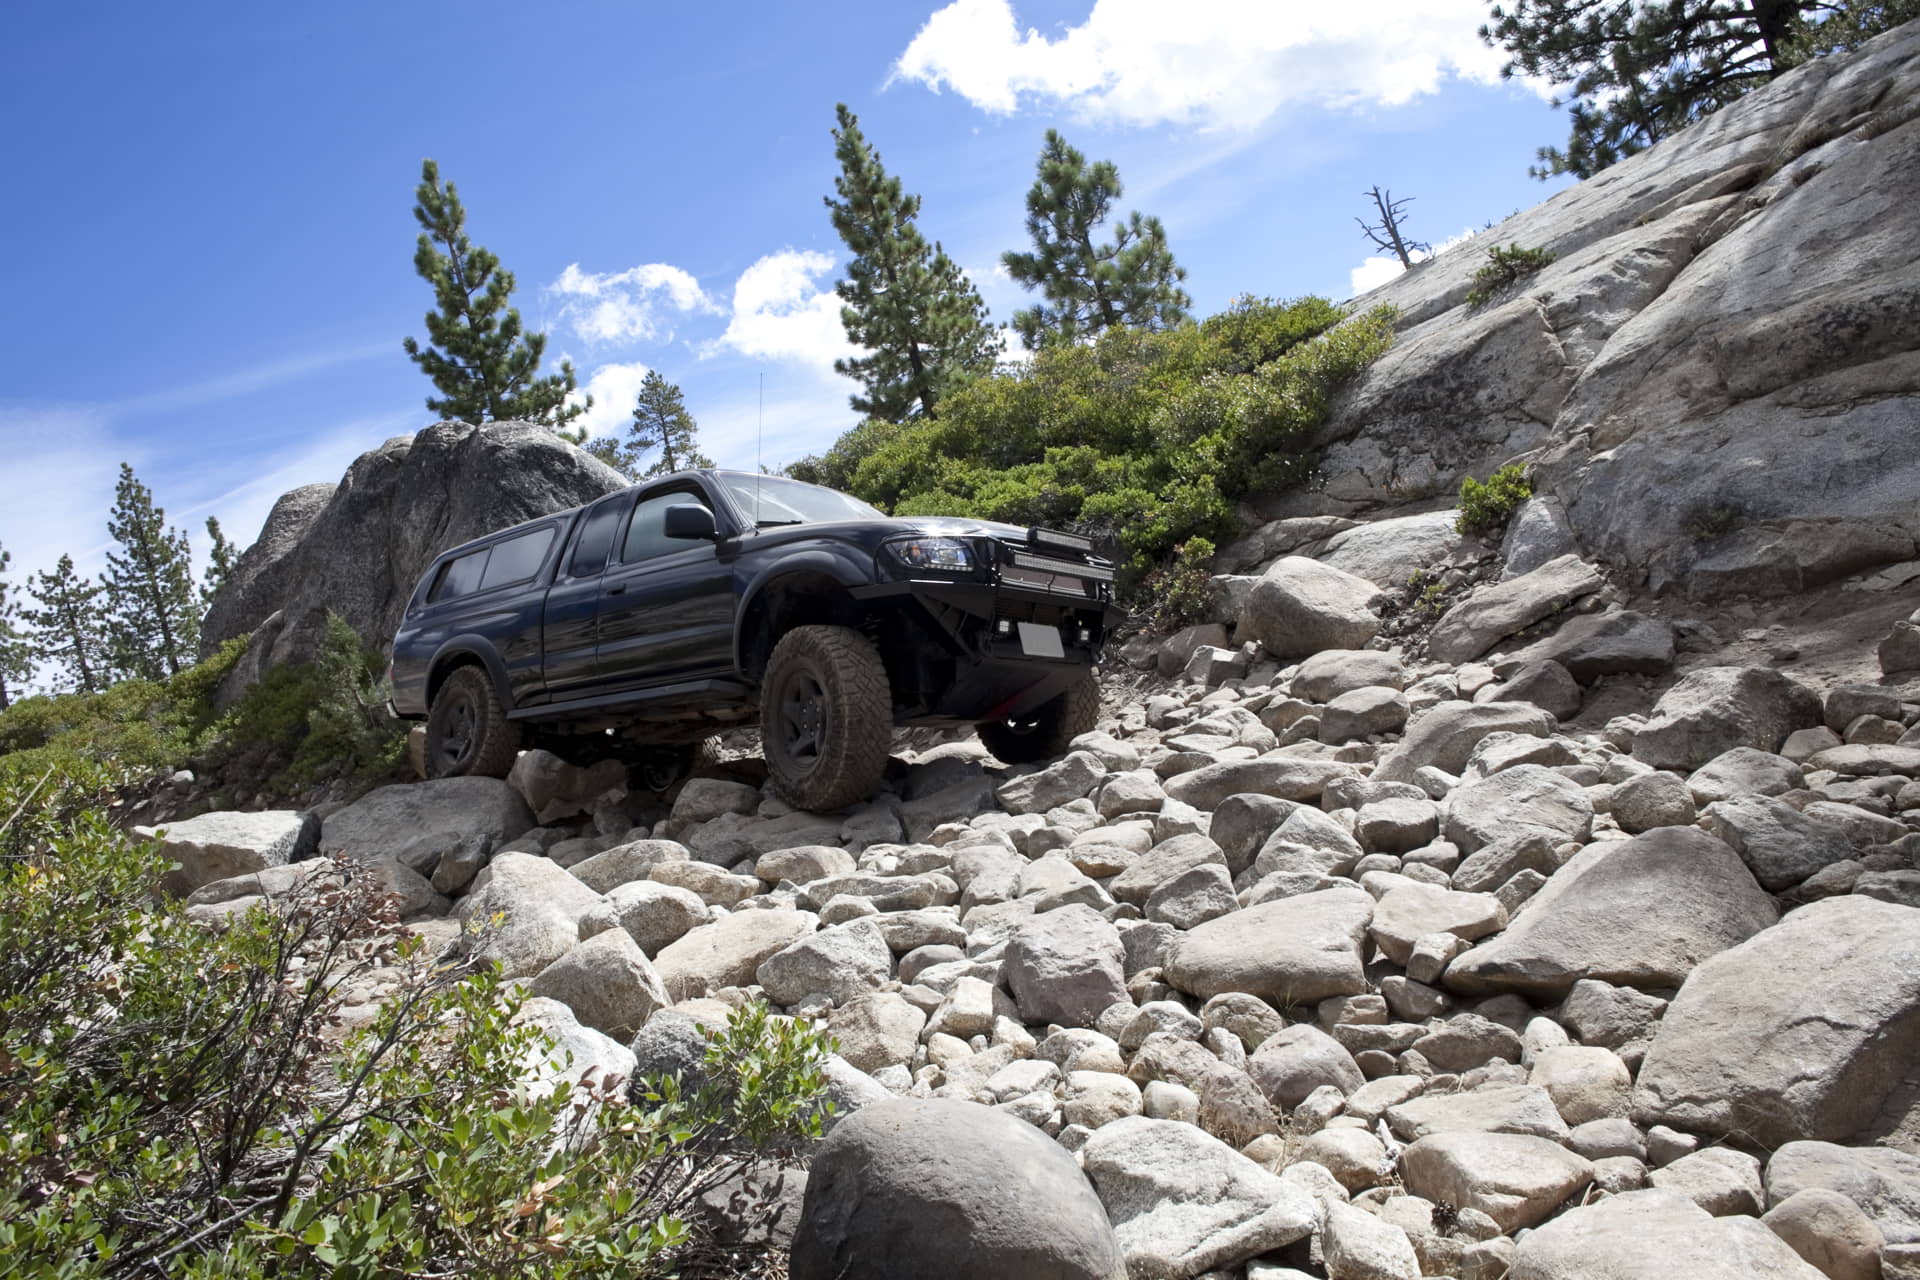 Truck in mountain on rocks